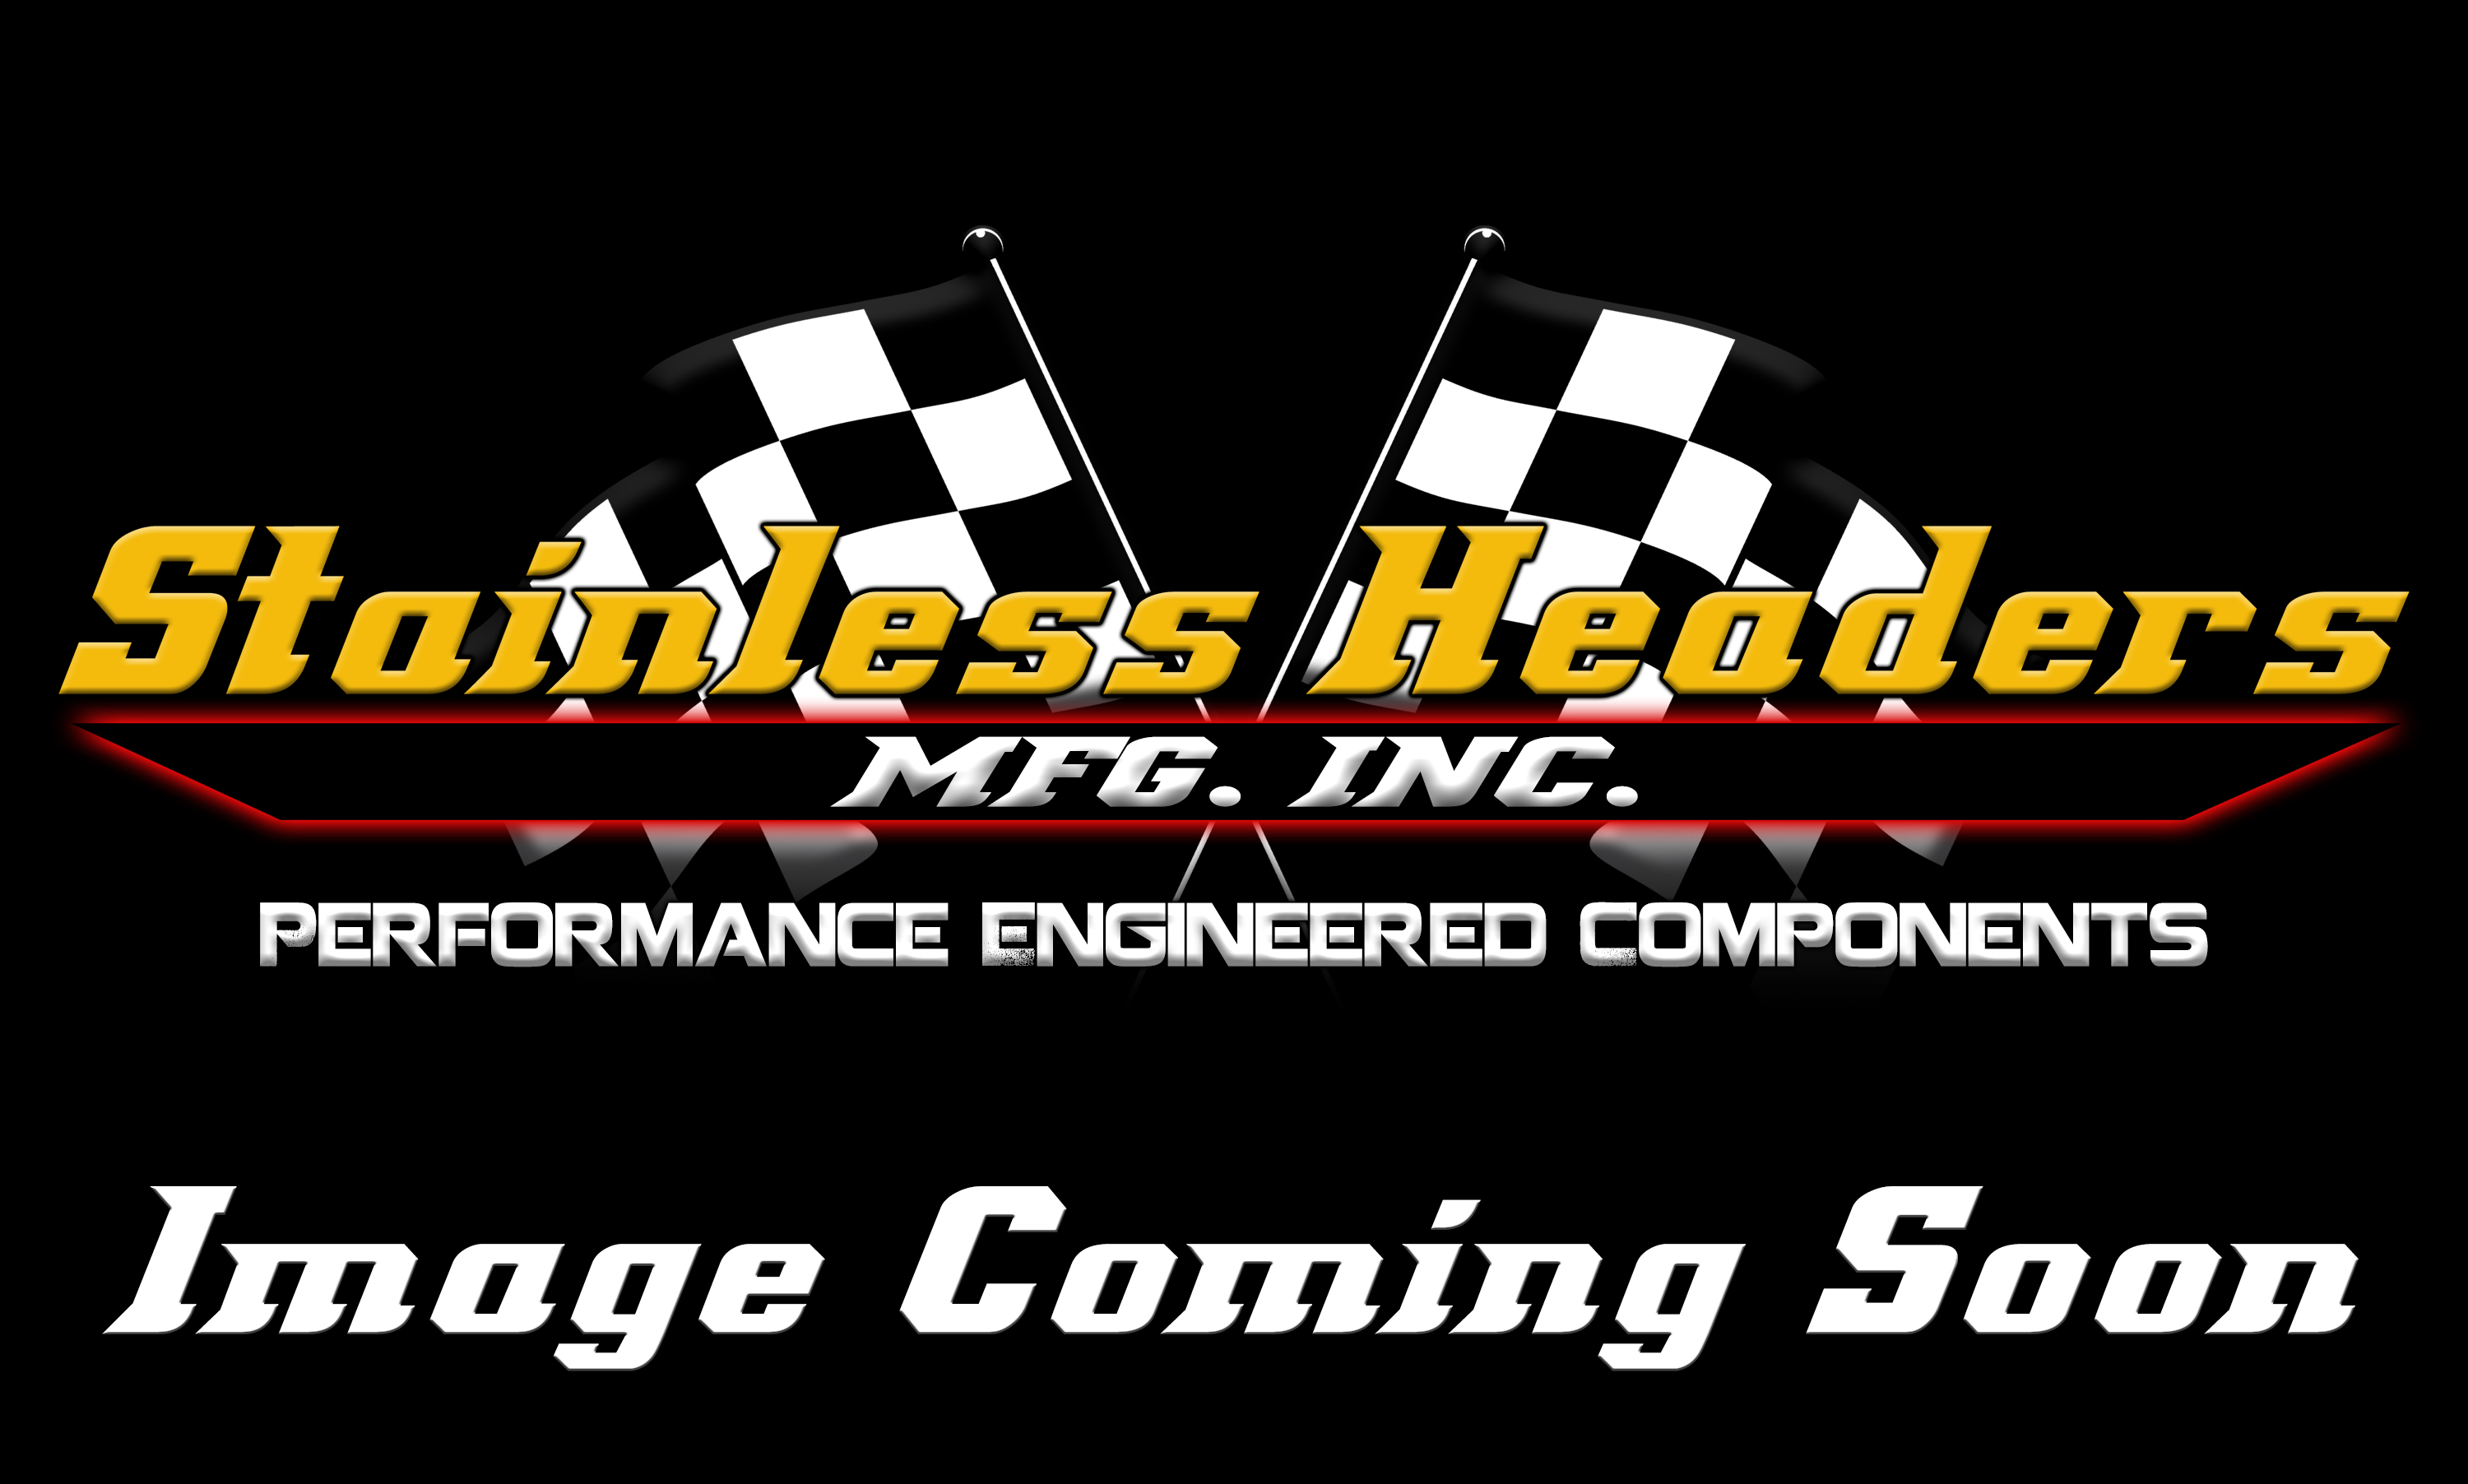 Stainless Headers - Chevy LS7/LSX D-Port Cobra Kit Car Custom Header Build Kit - Image 1